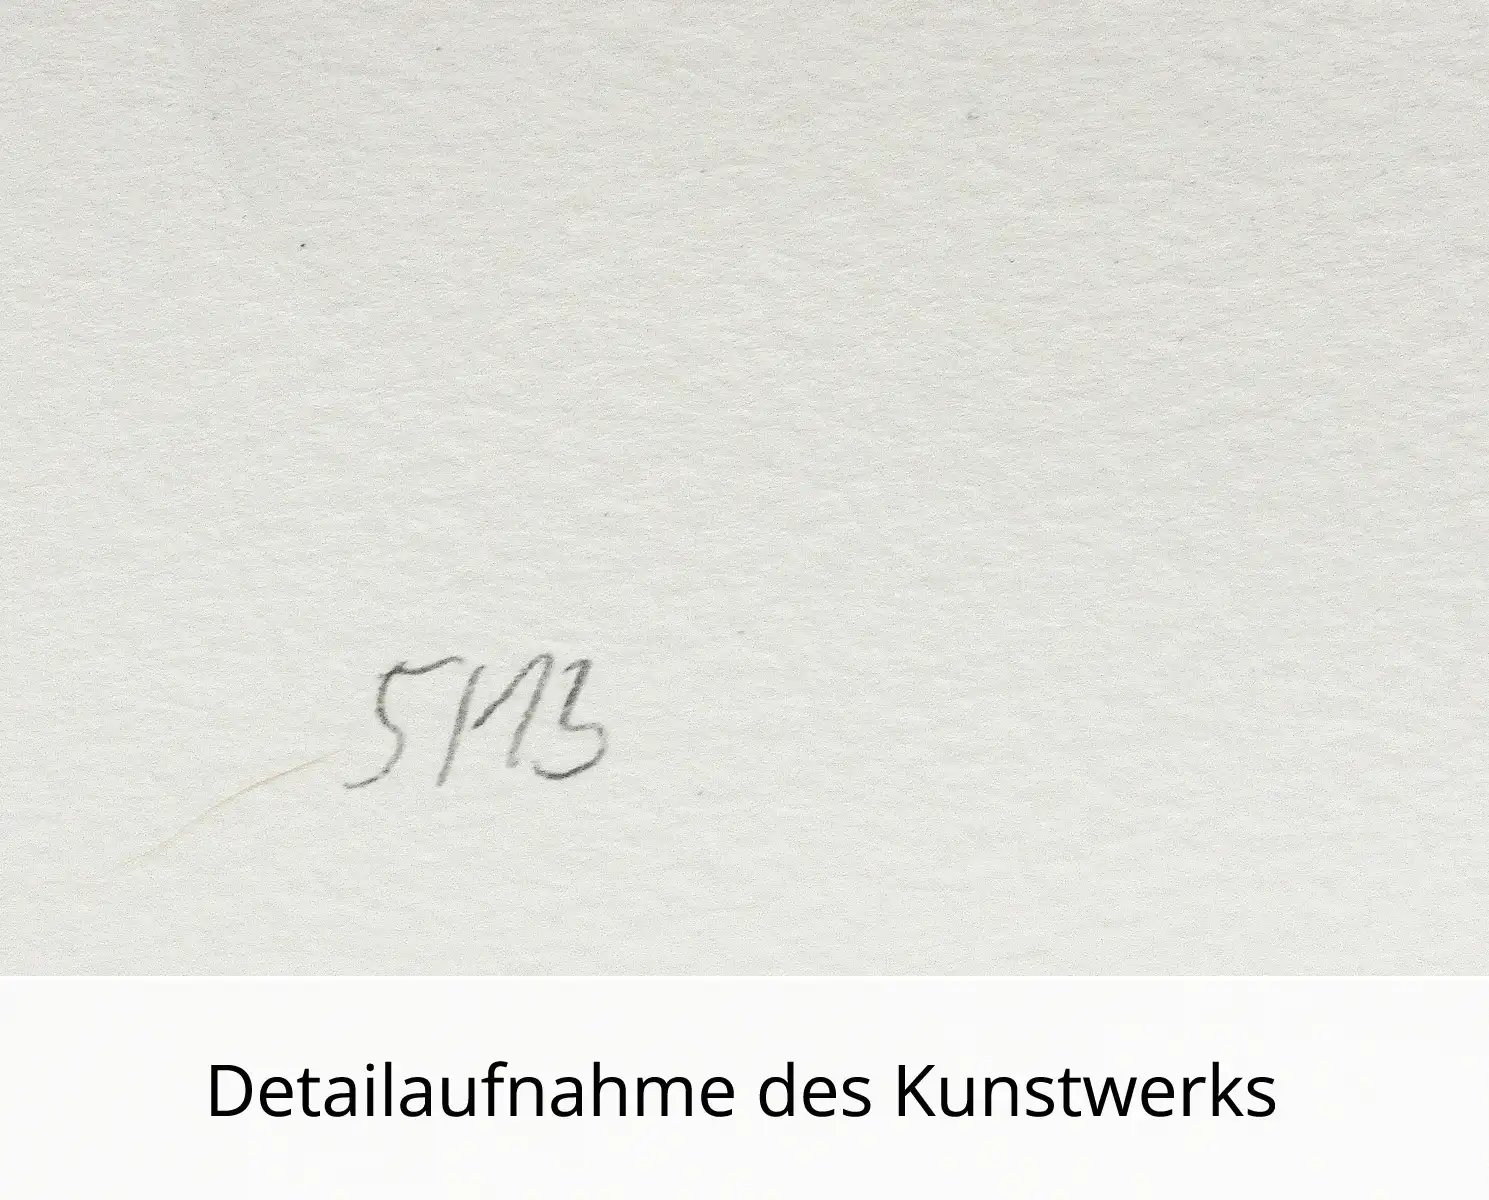 C. Blechschmidt: "13 und einer", Originale Grafik/Lithographie